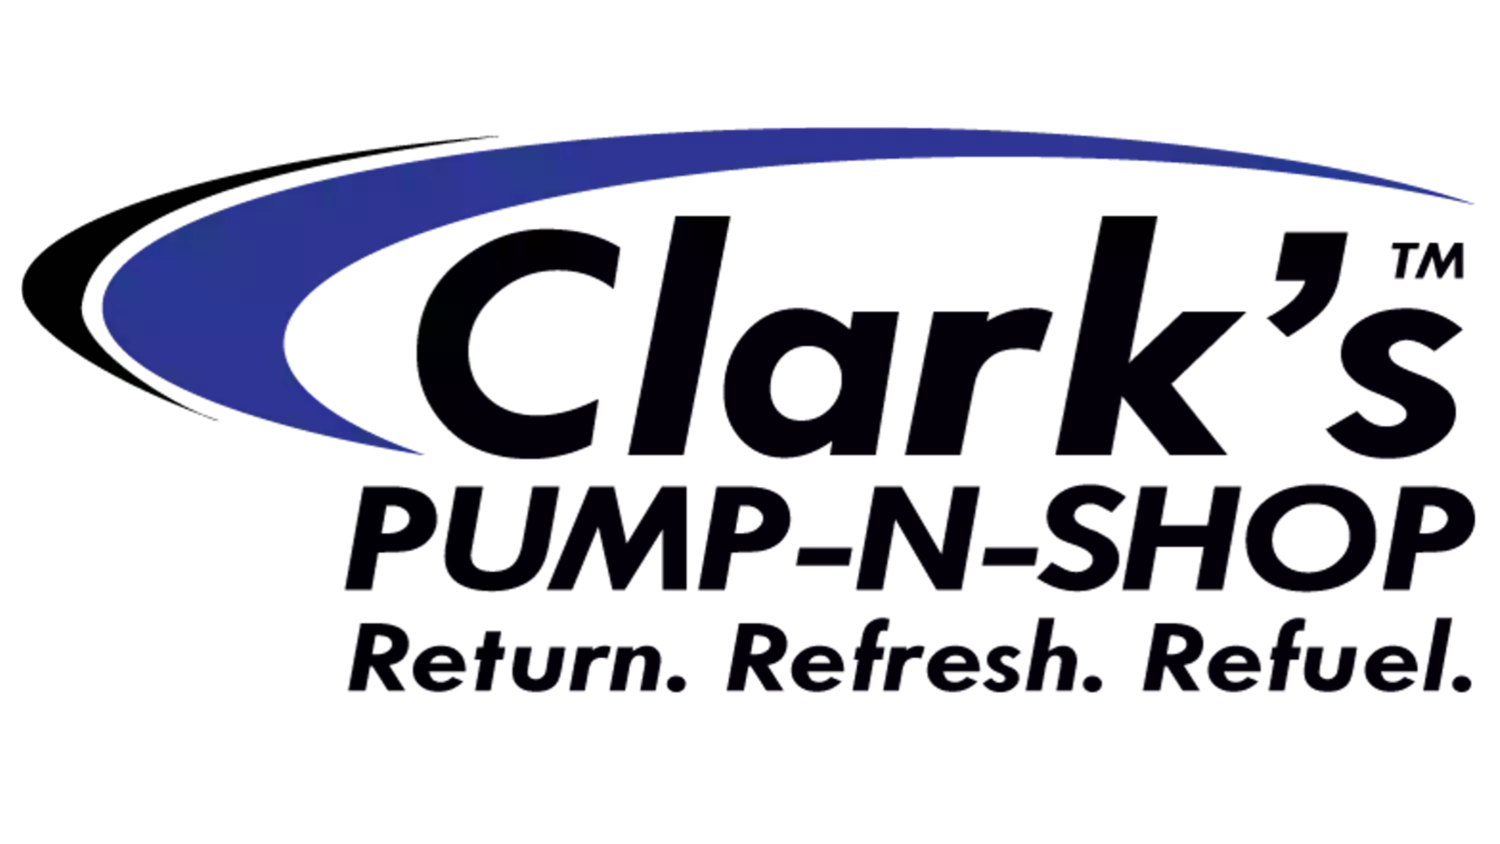 Clarks Pump-N-Shop